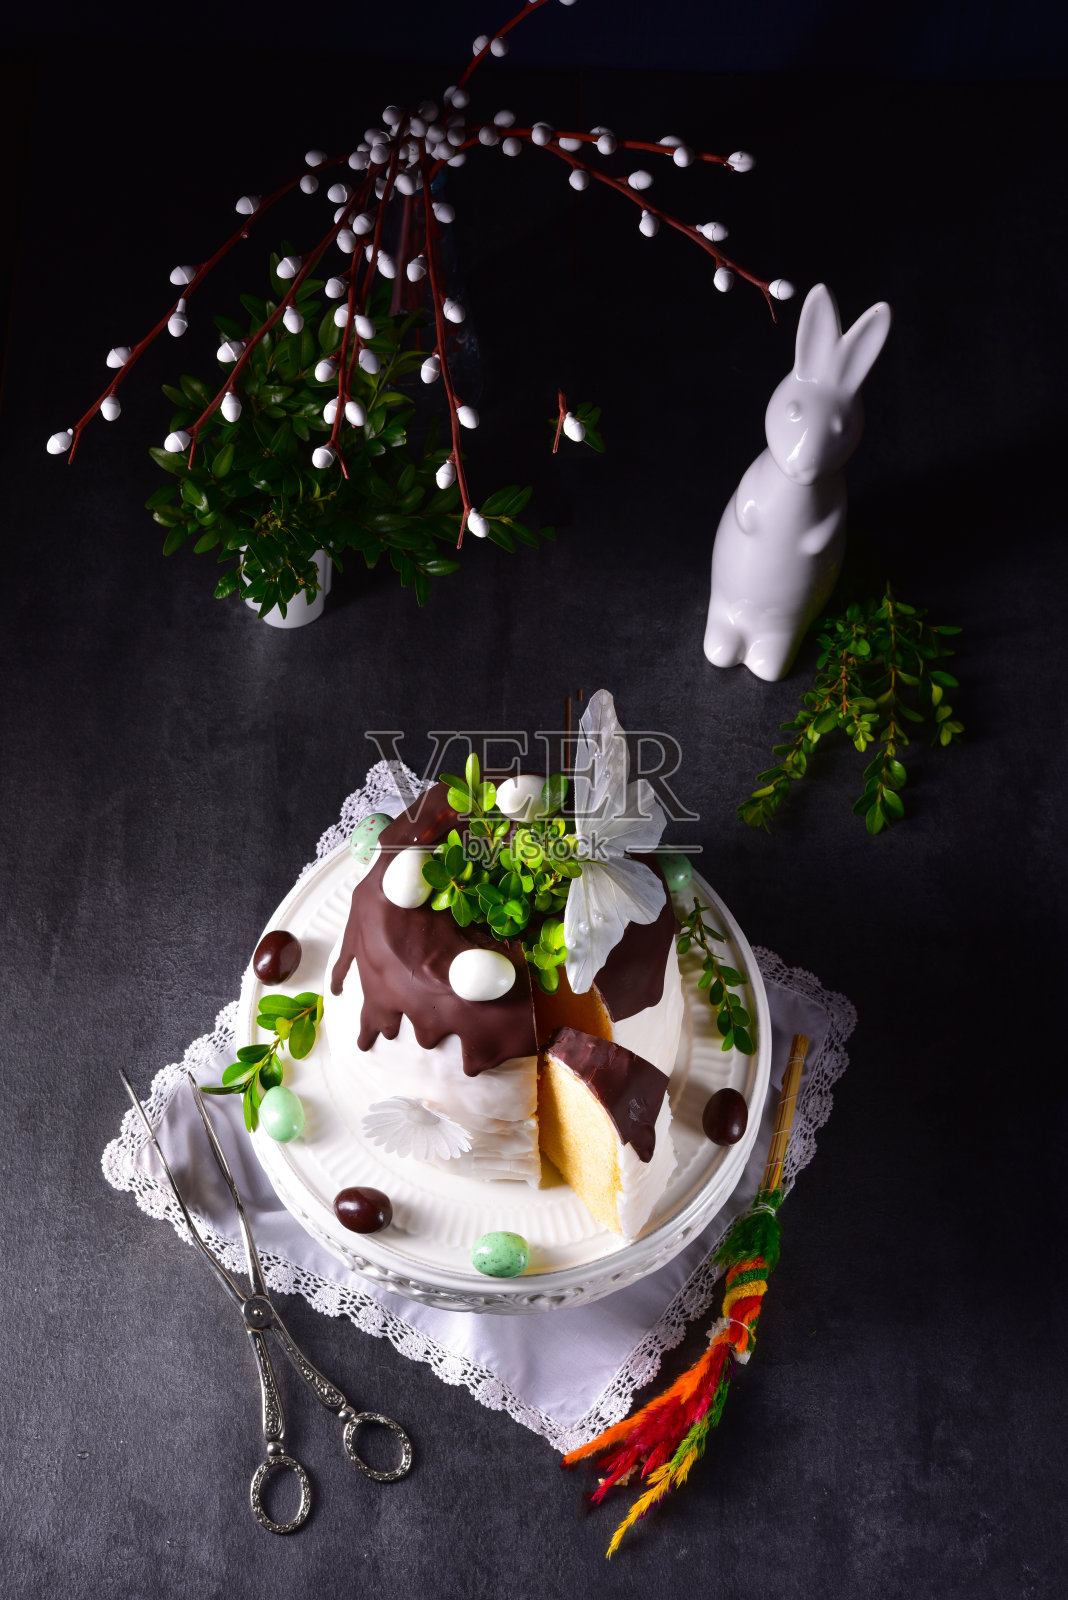 加糖和巧克力釉的复活节蛋糕照片摄影图片